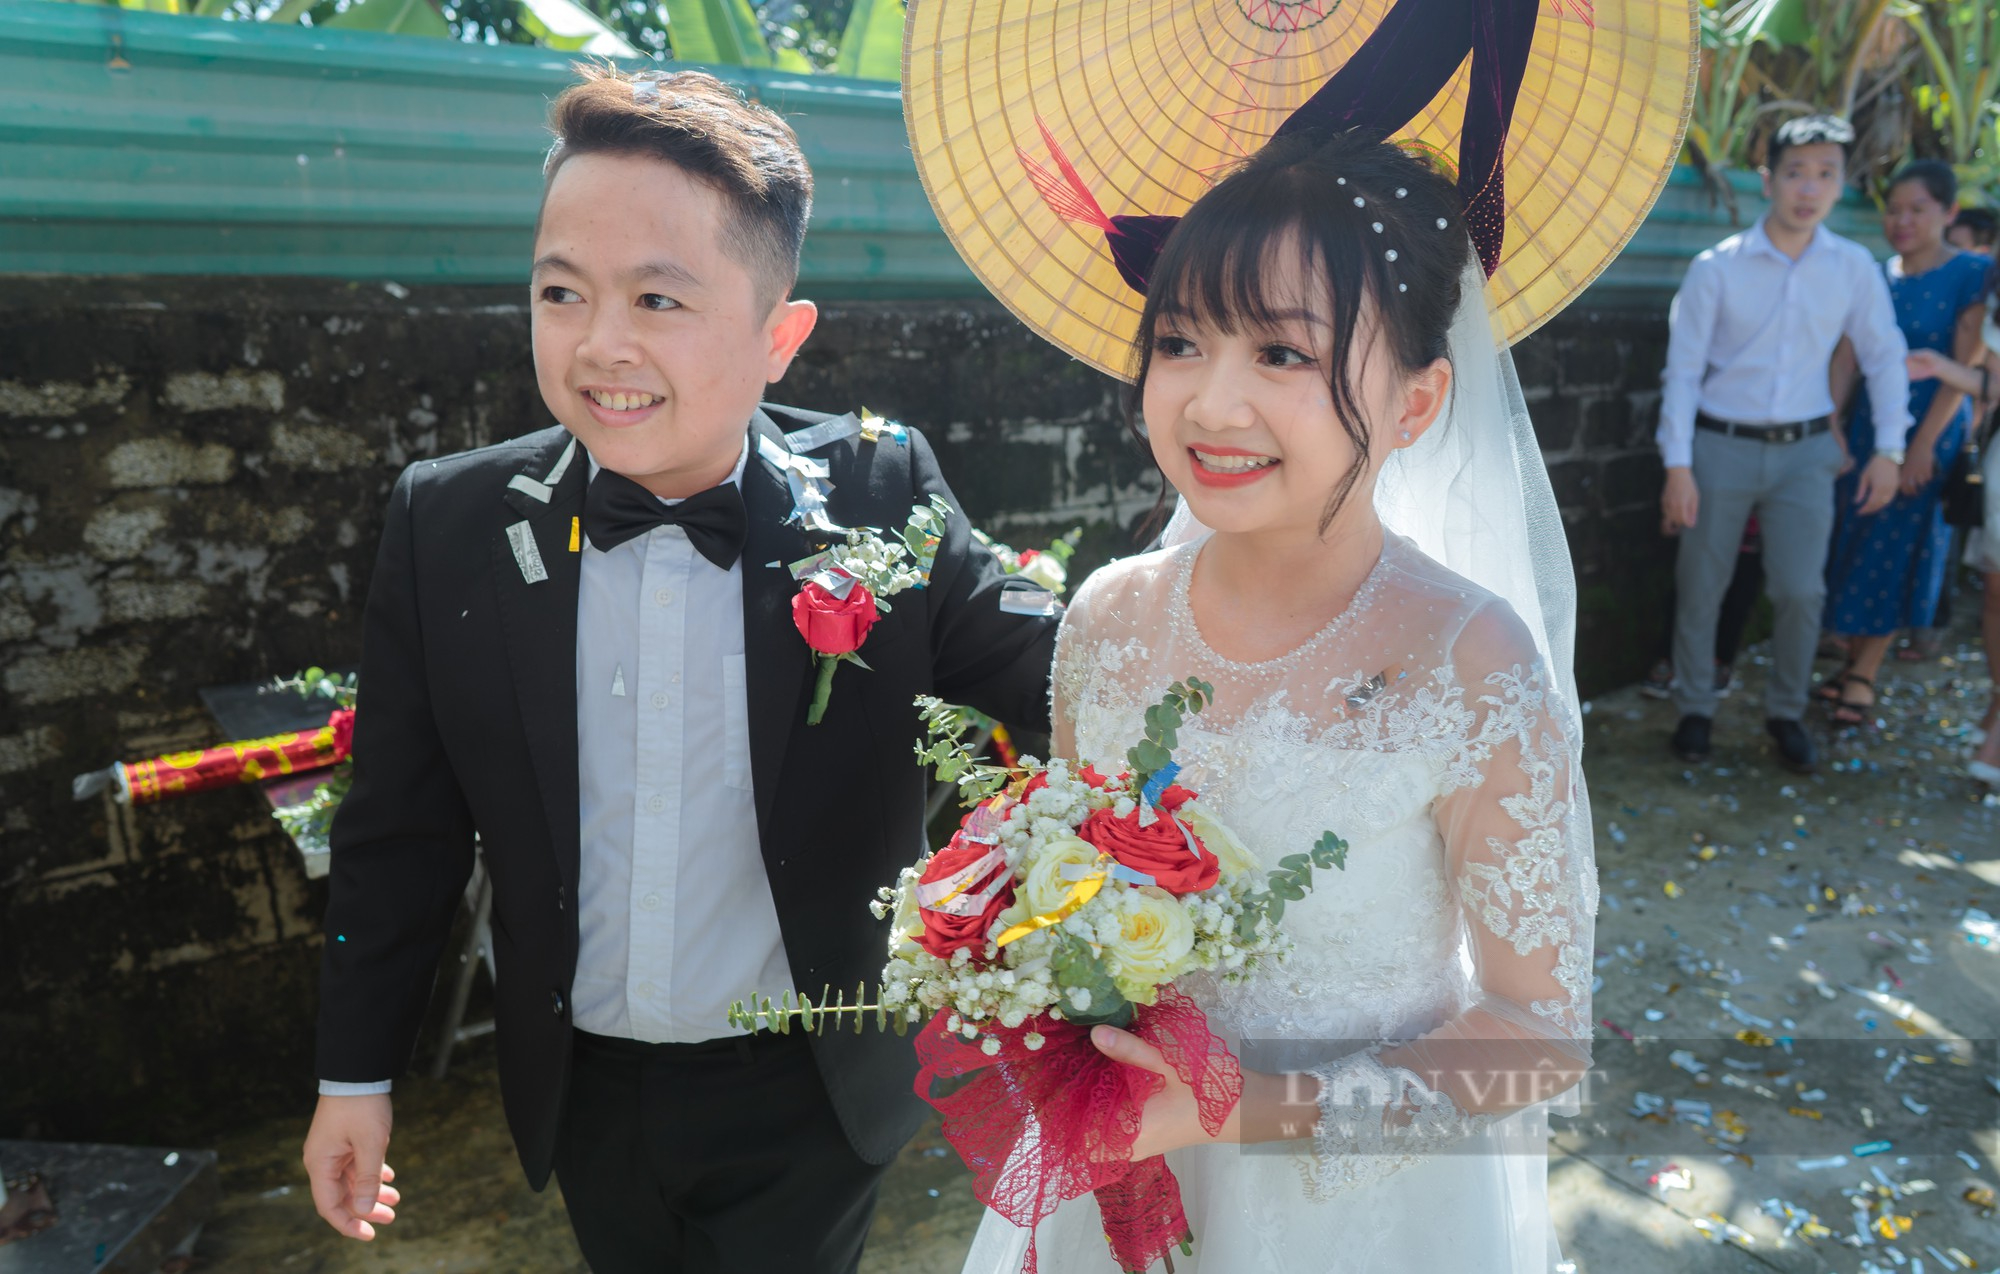 Hình ảnh siêu dễ thương đốn tim cộng đồng mạng của cặp đôi tí hon vừa làm đám cưới ở Nghệ An - Ảnh 1.